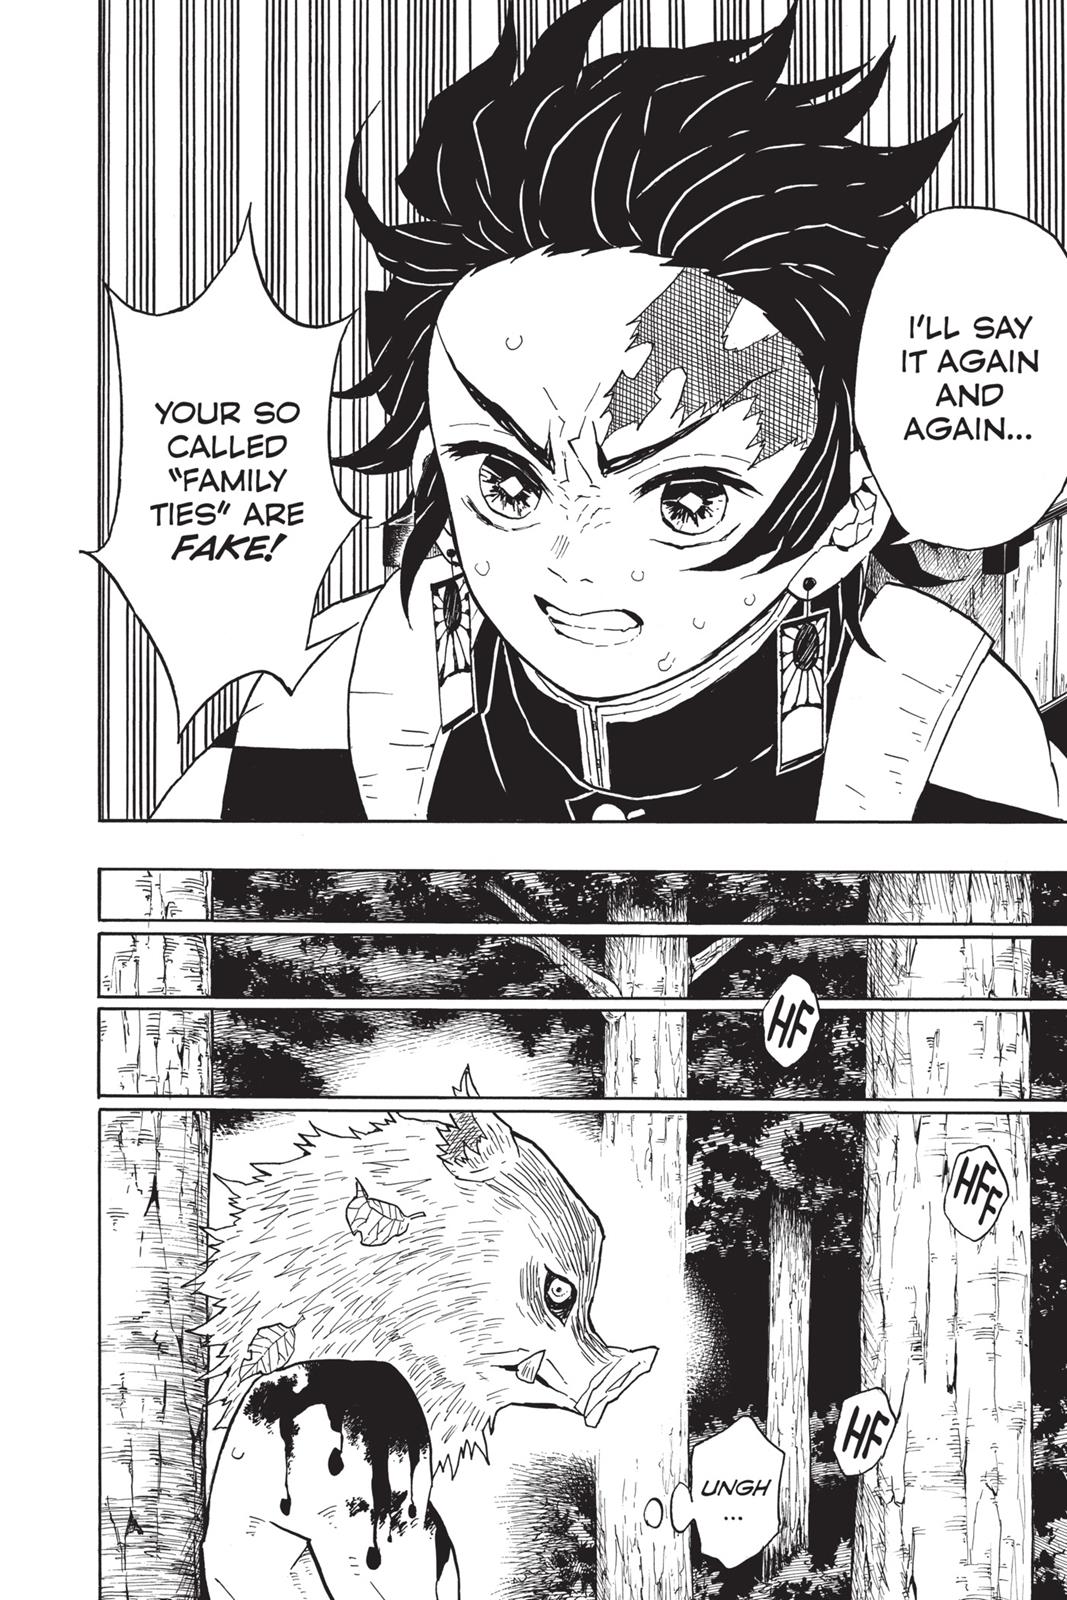 Demon Slayer Manga Manga Chapter - 36 - image 4